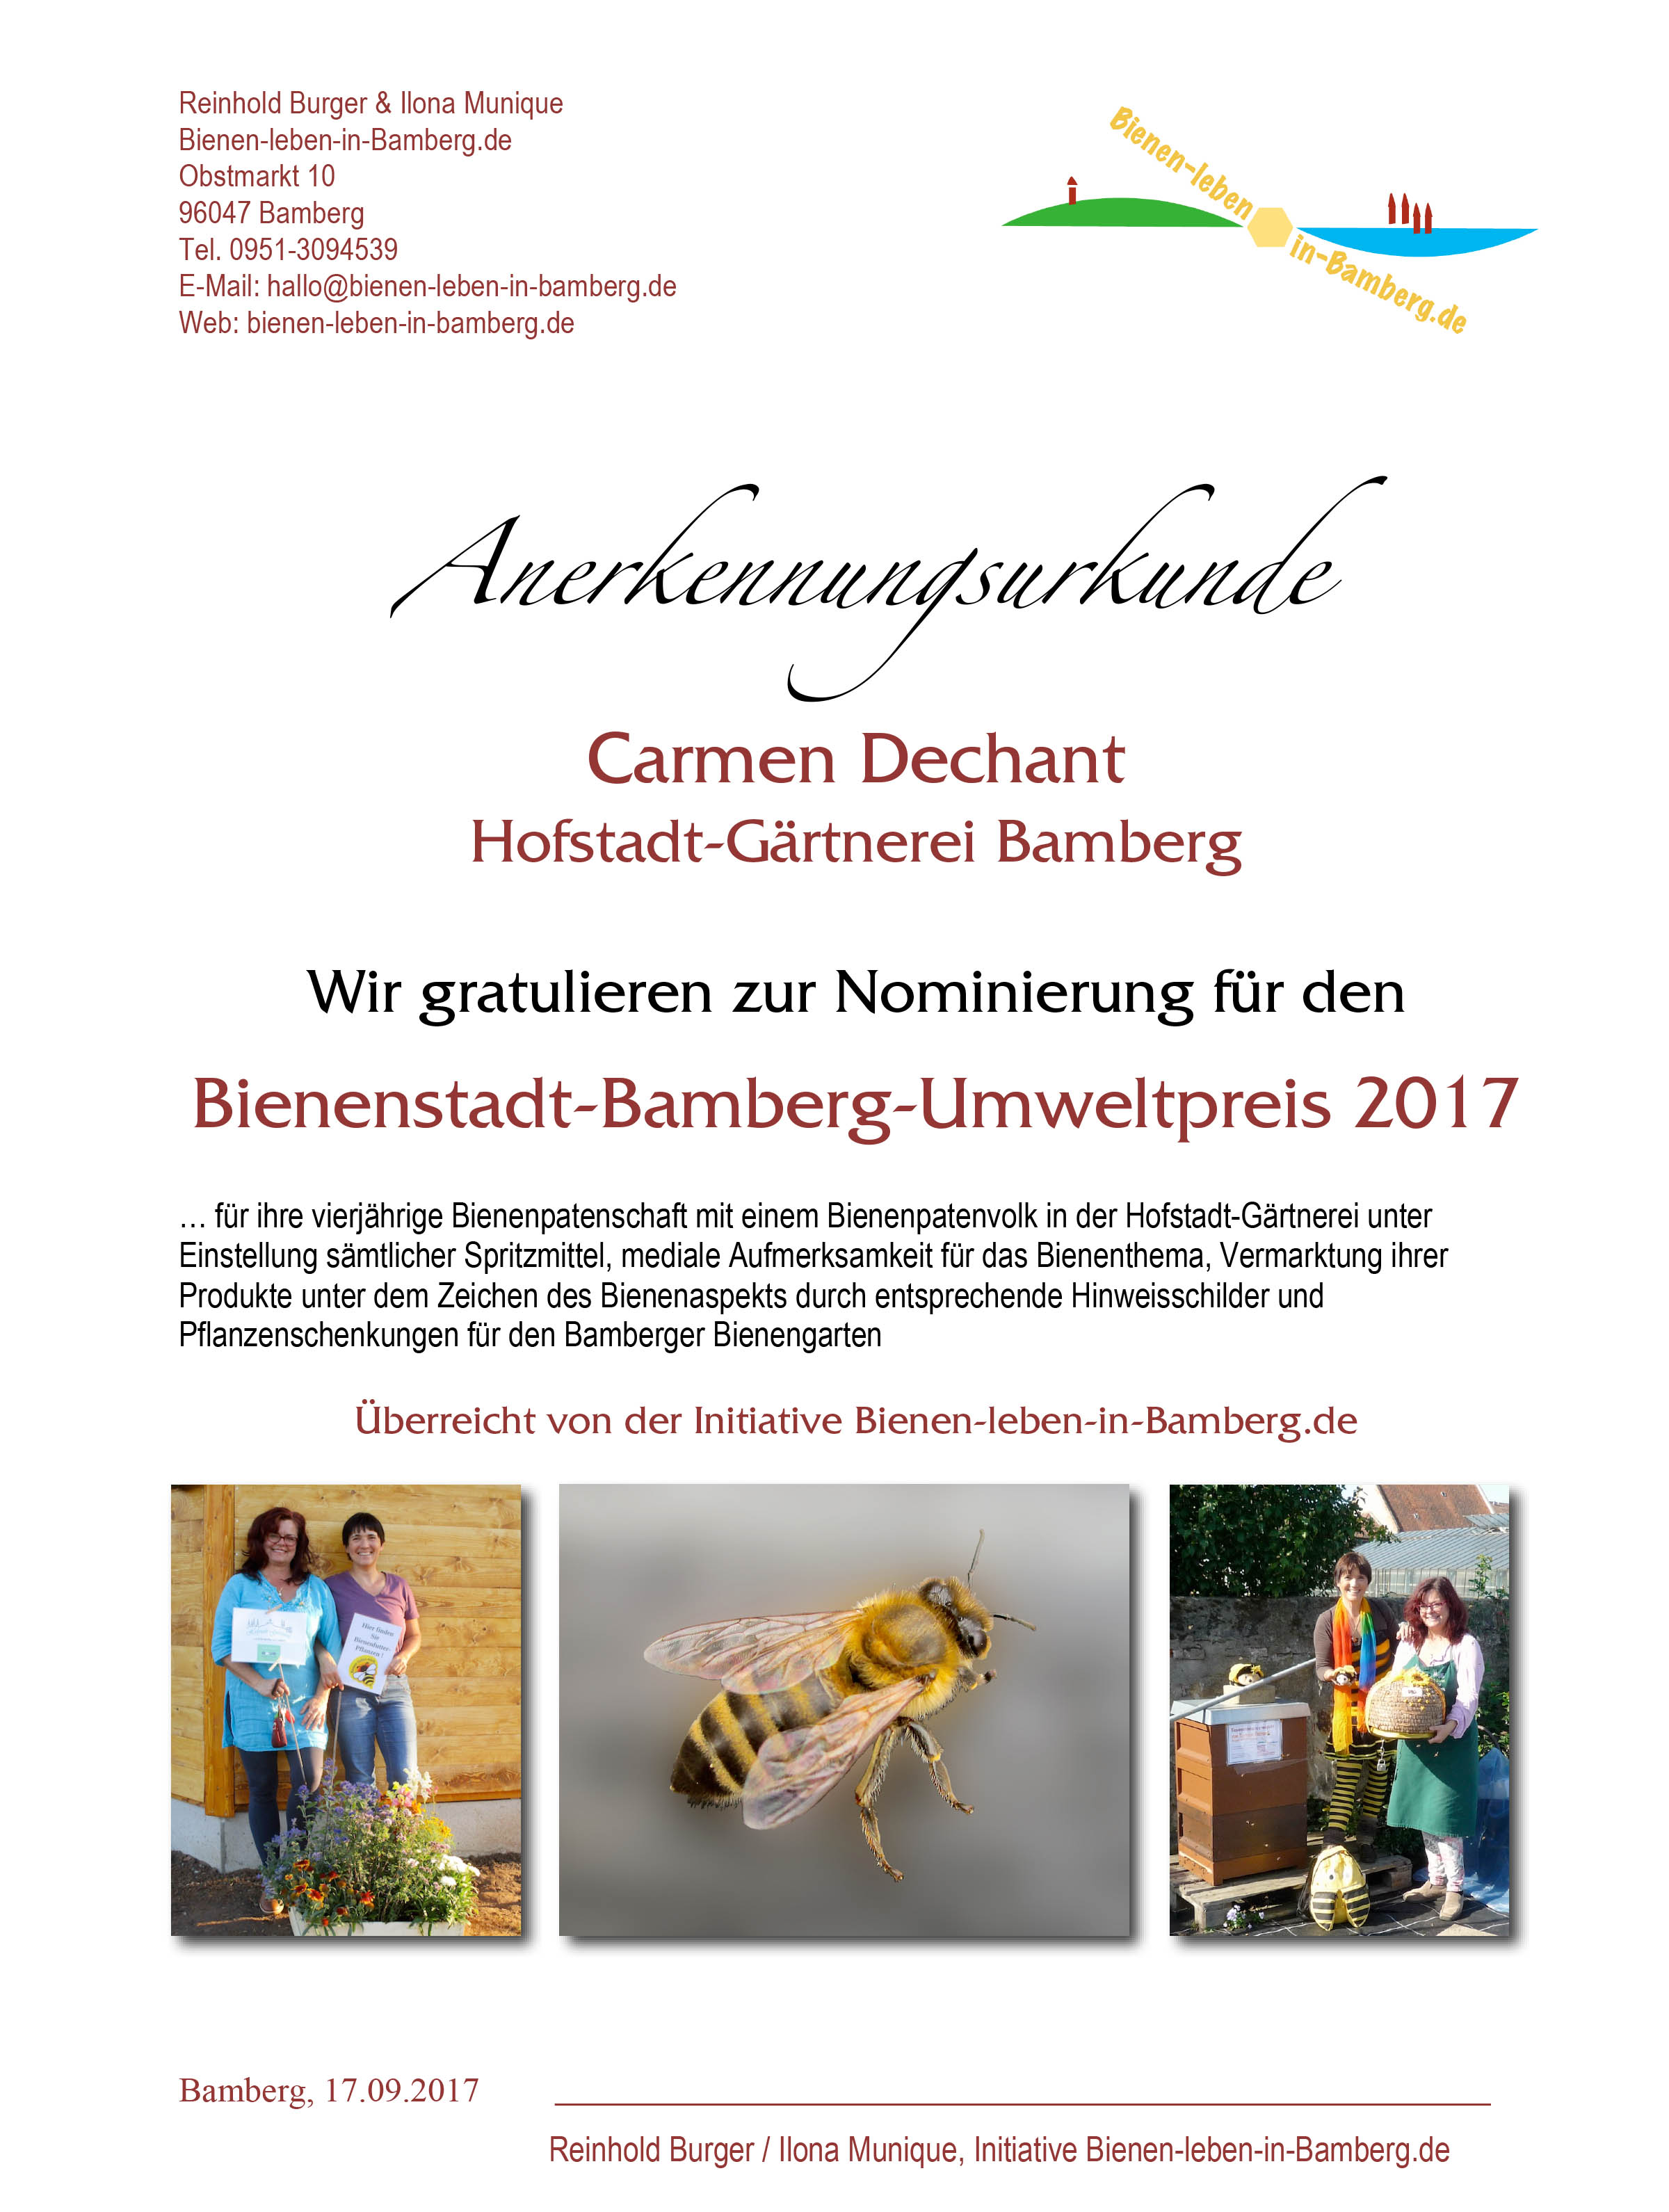 Anerkennungsurkunde für Carmen Dechant, Bienenstadt-Bamberg-Umweltpreis 2017